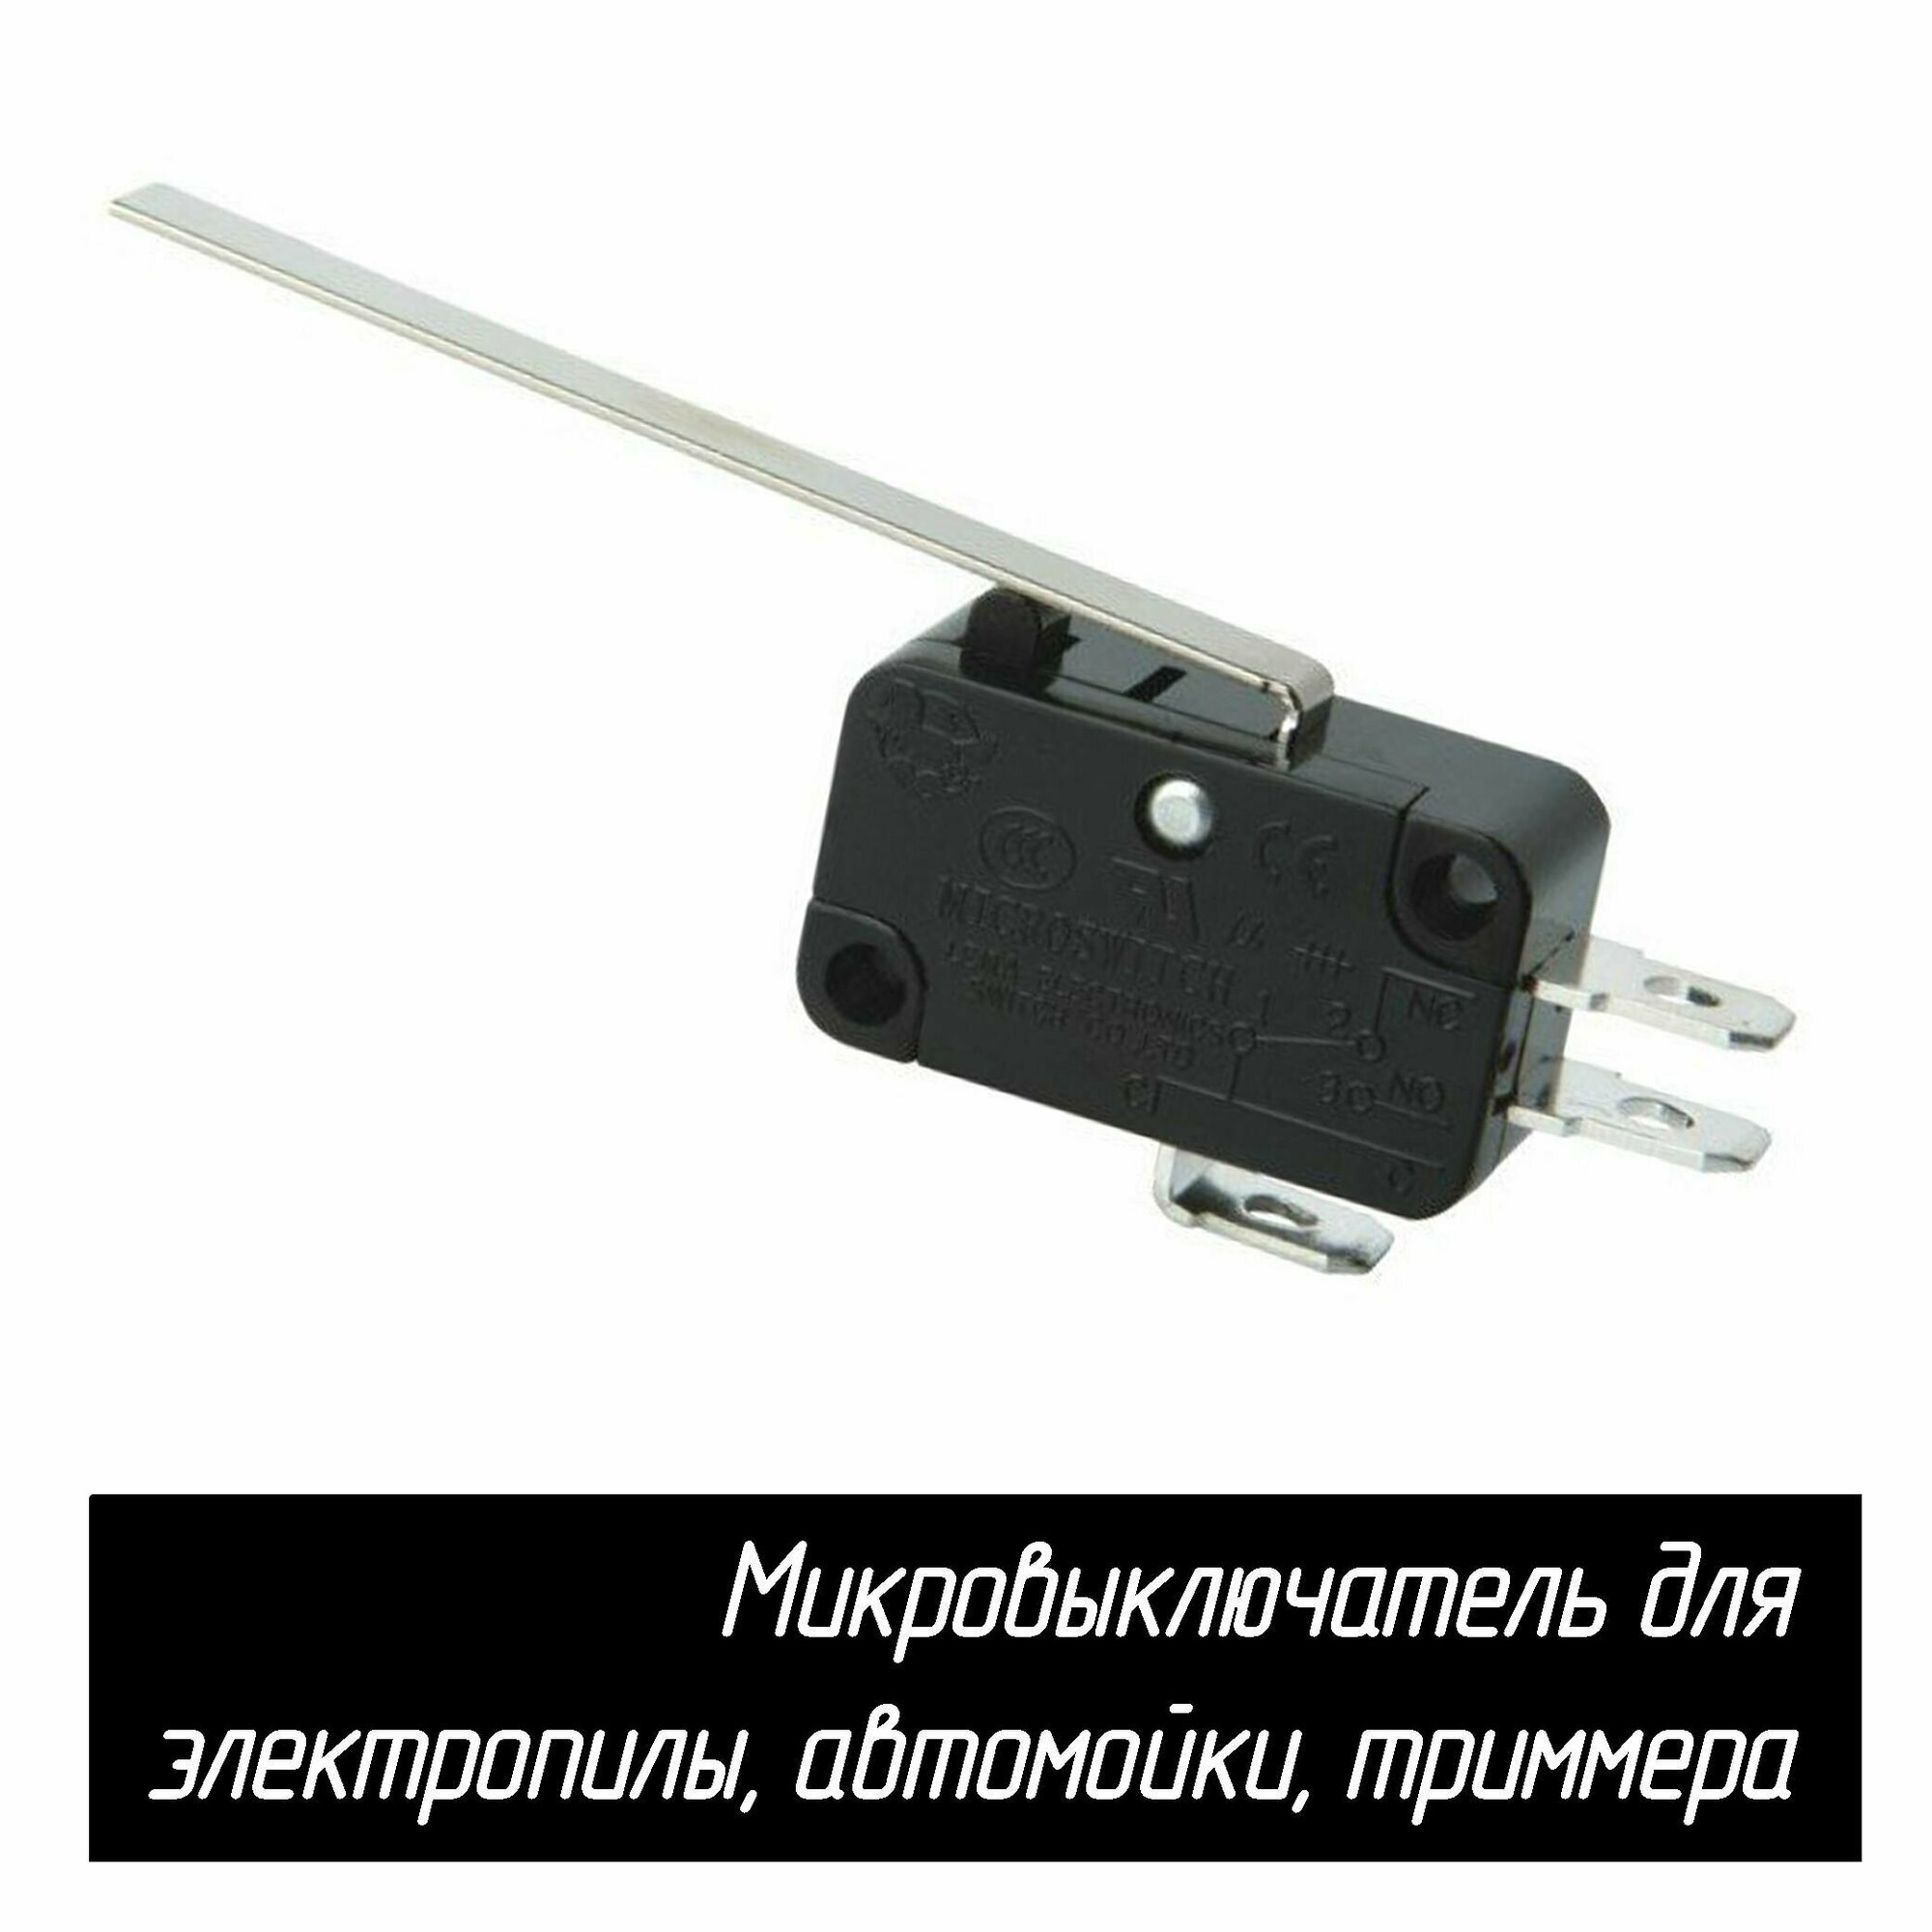 Микровыключатель (кнопка) KW7-0 16A 250VAC для электропилы, автомойки, триммера (с длинной планкой)